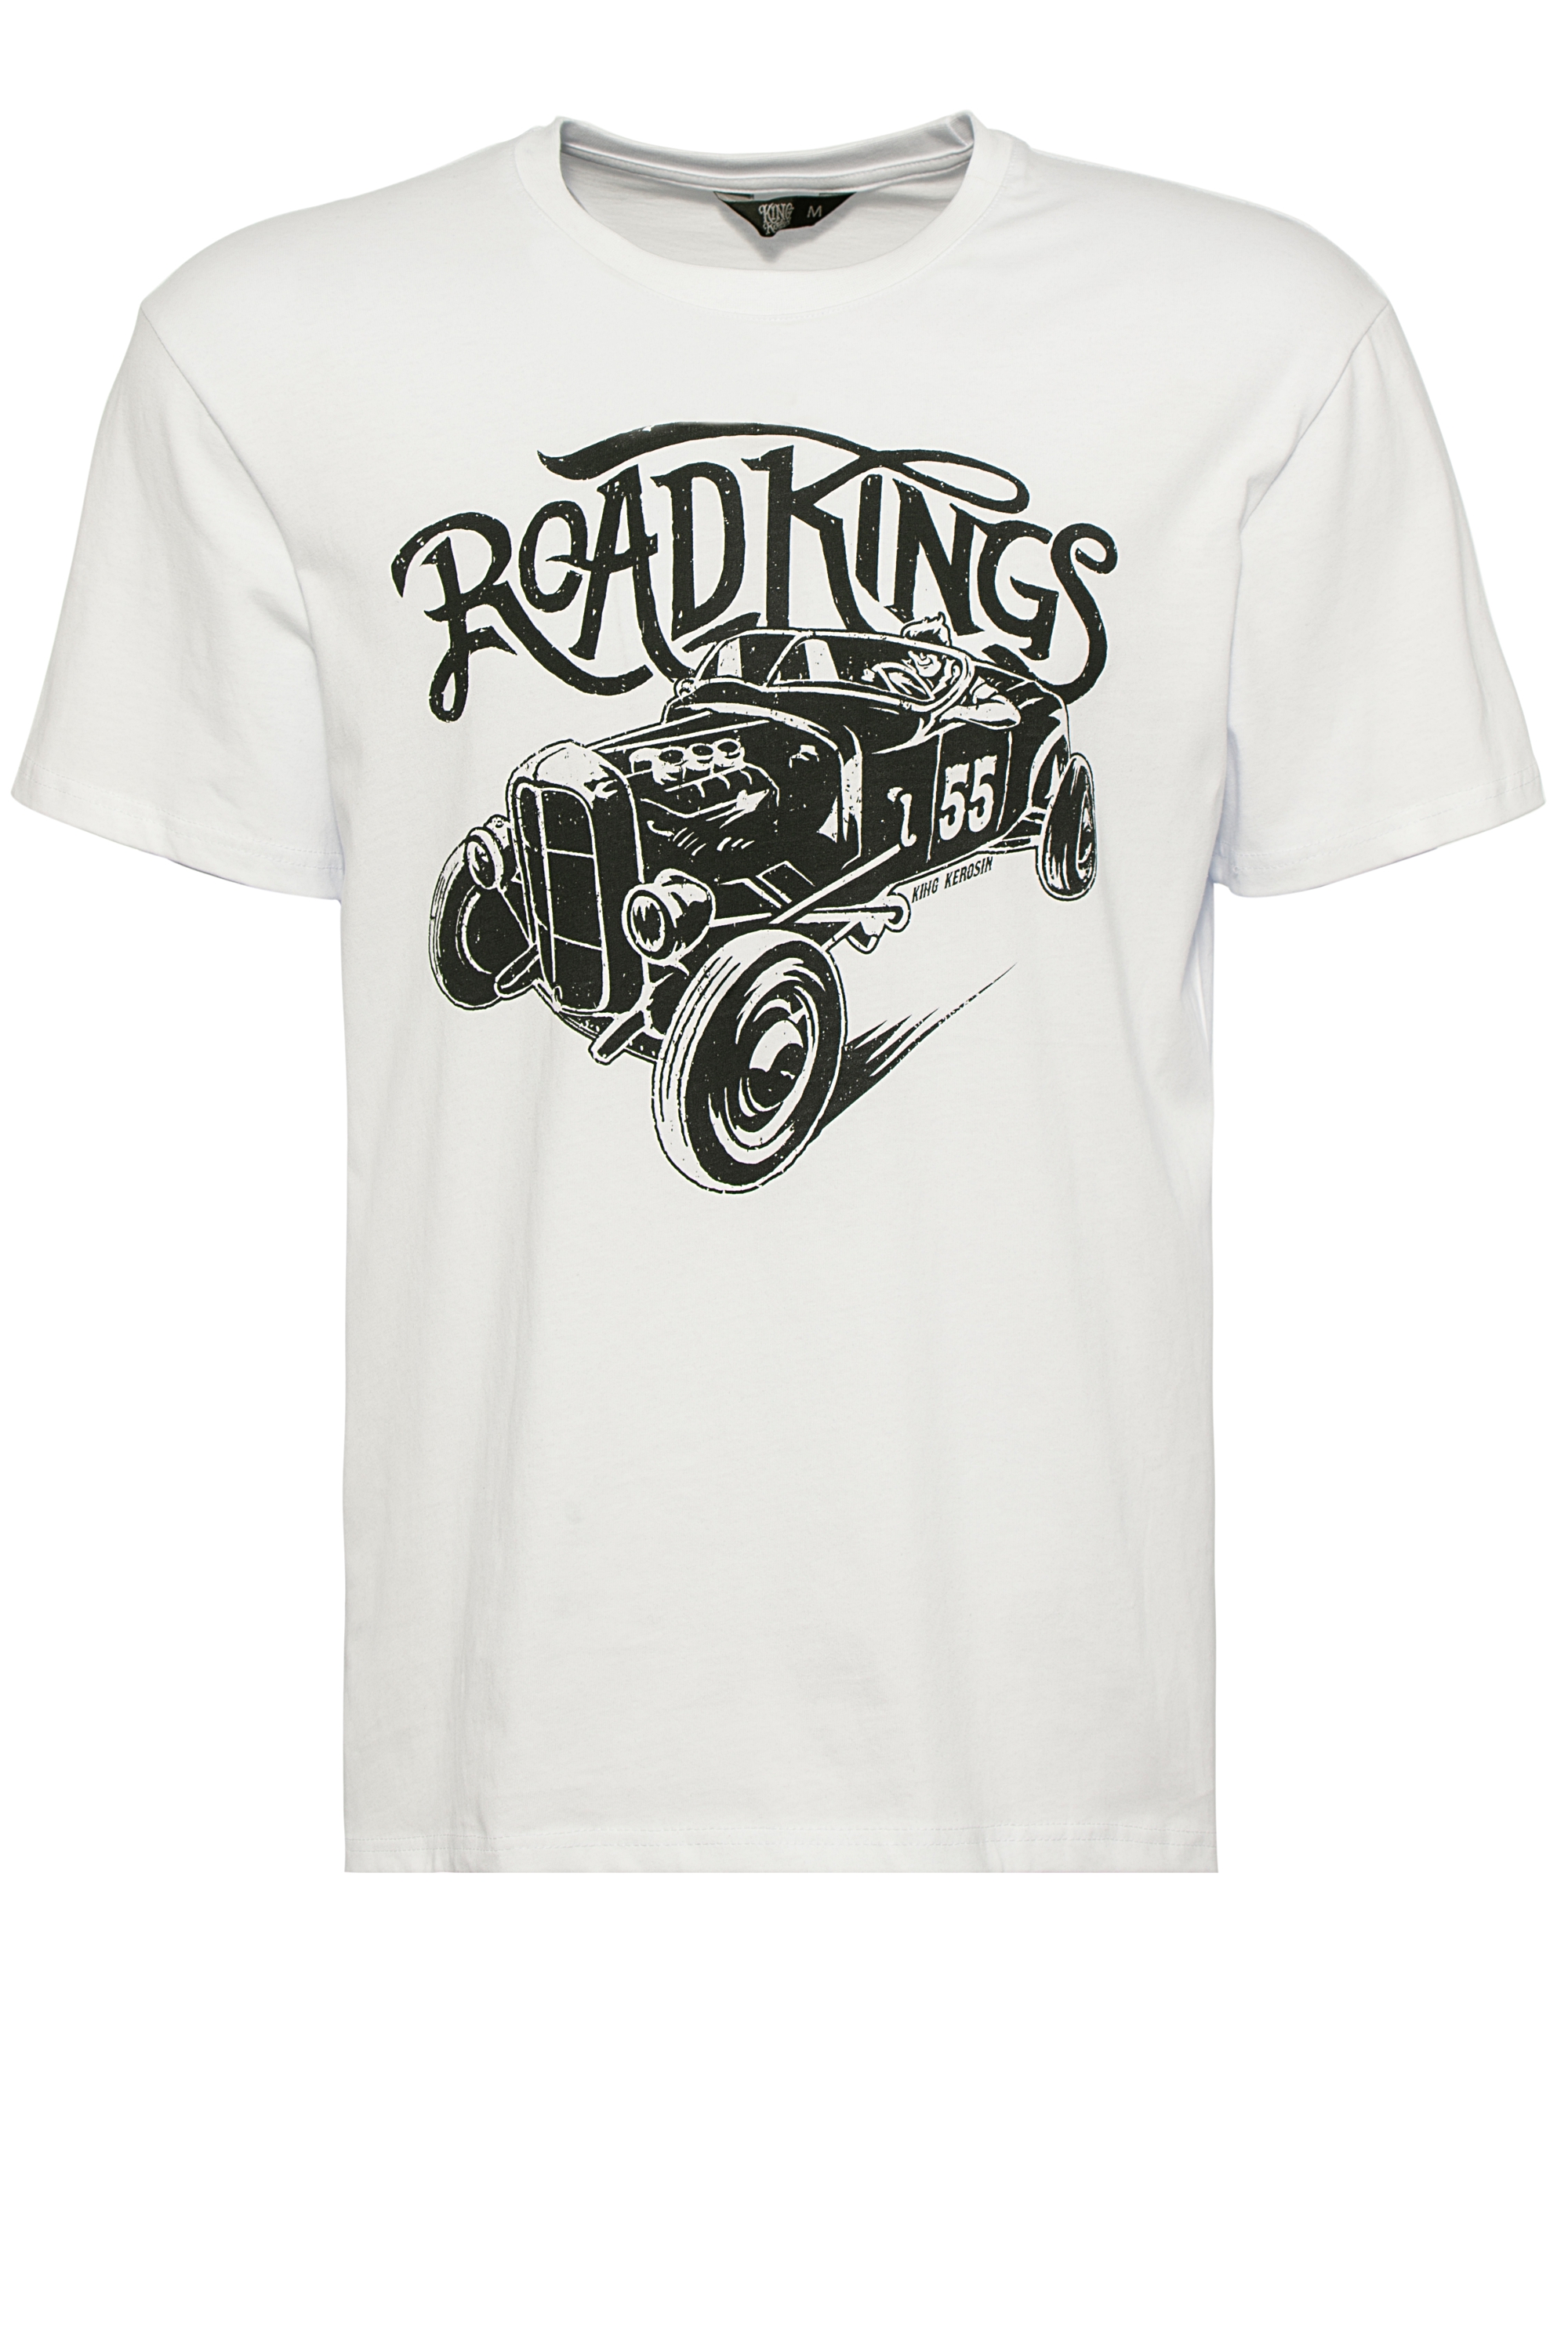 King Kerosin T-Shirt - Road Kings 3XL